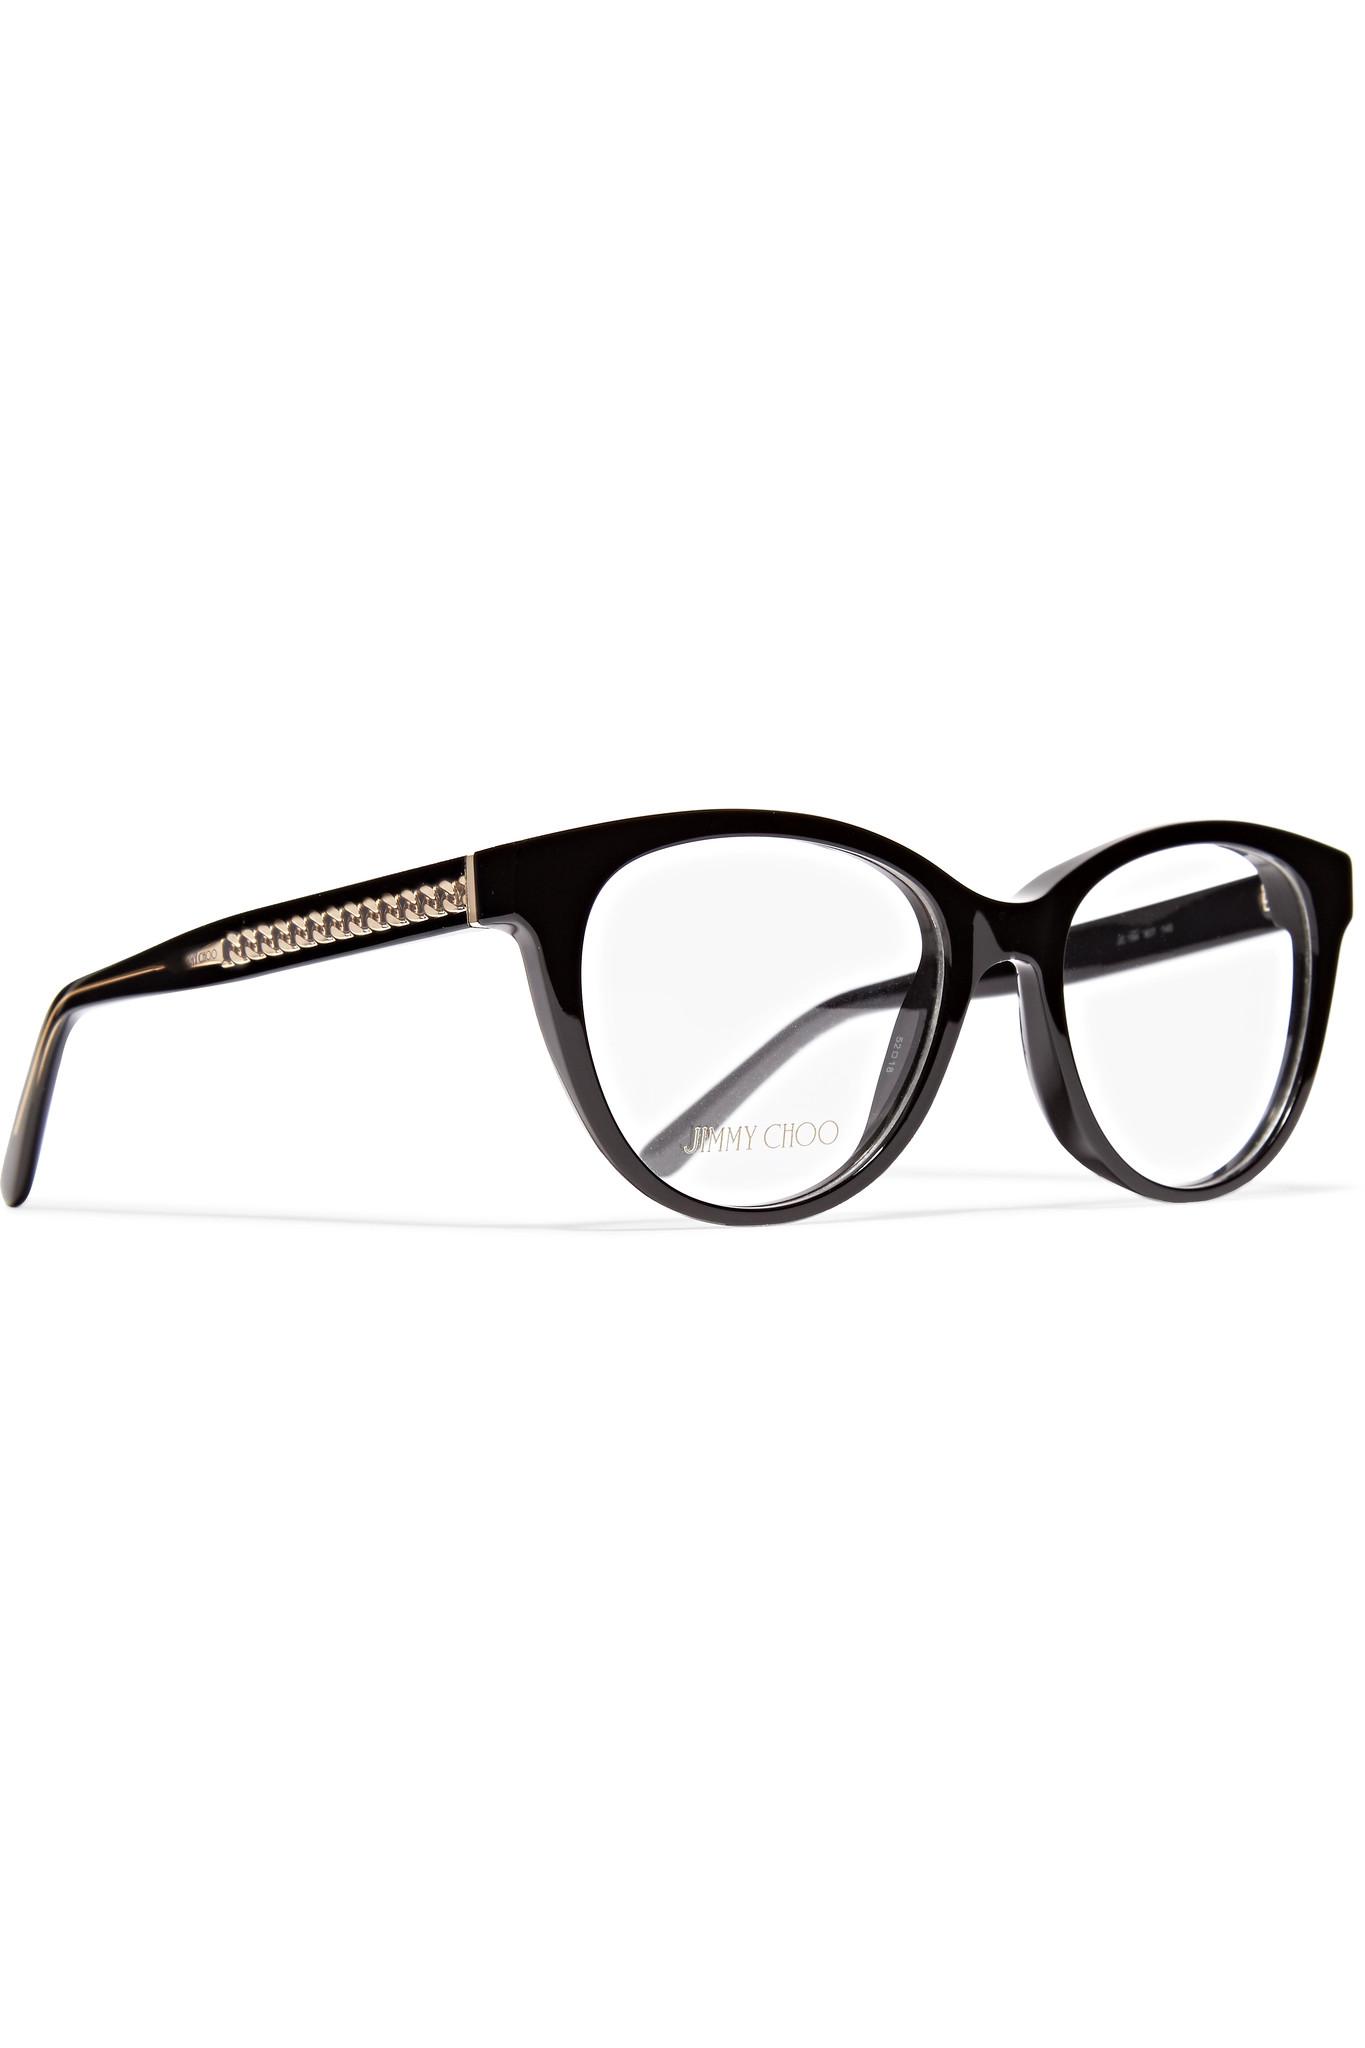 Lyst - Jimmy Choo Acetate Optical Glasses in Black